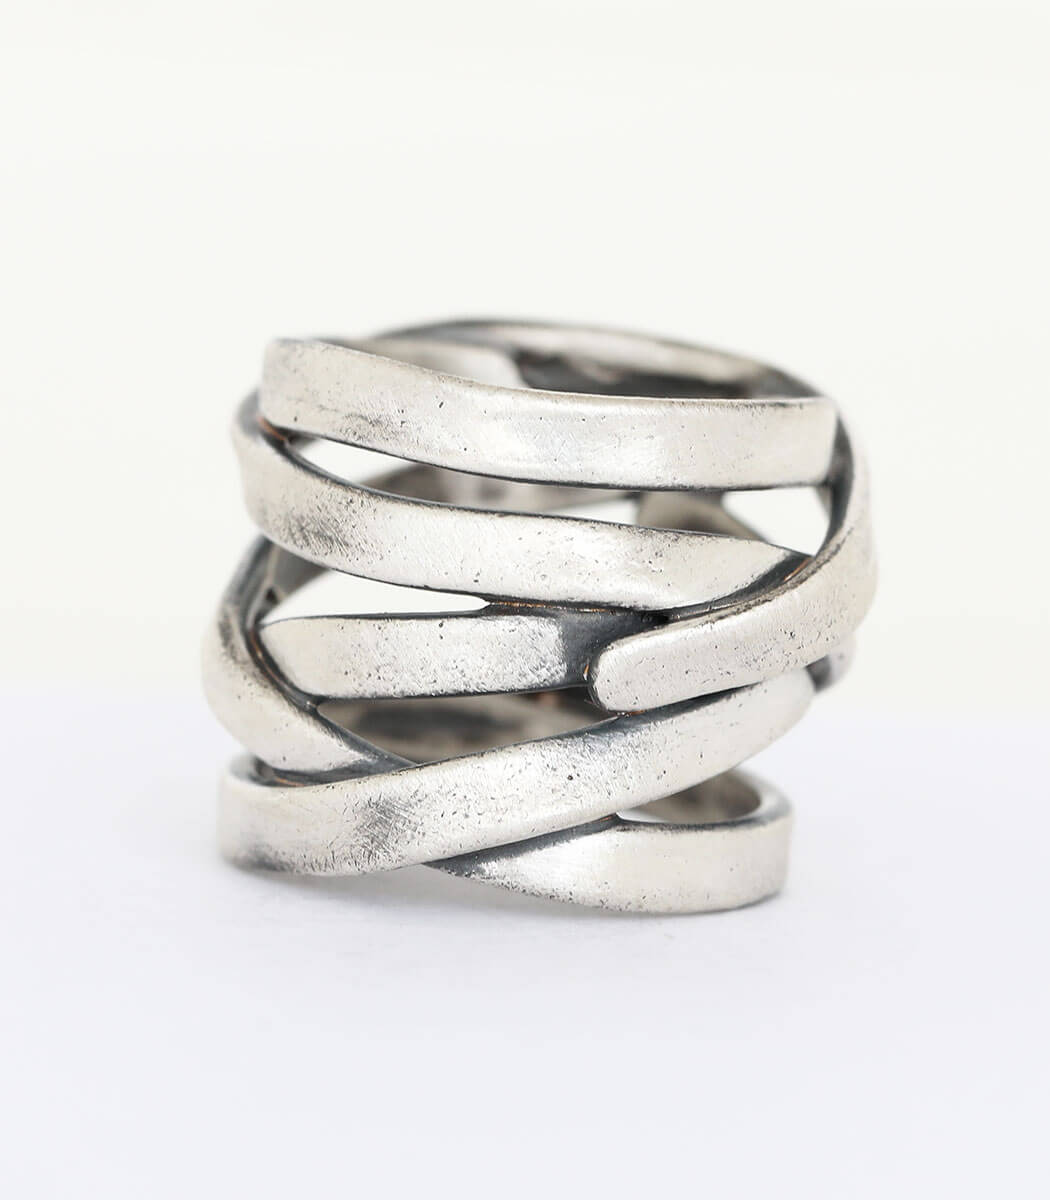 Silber Ring Liane Gr.61